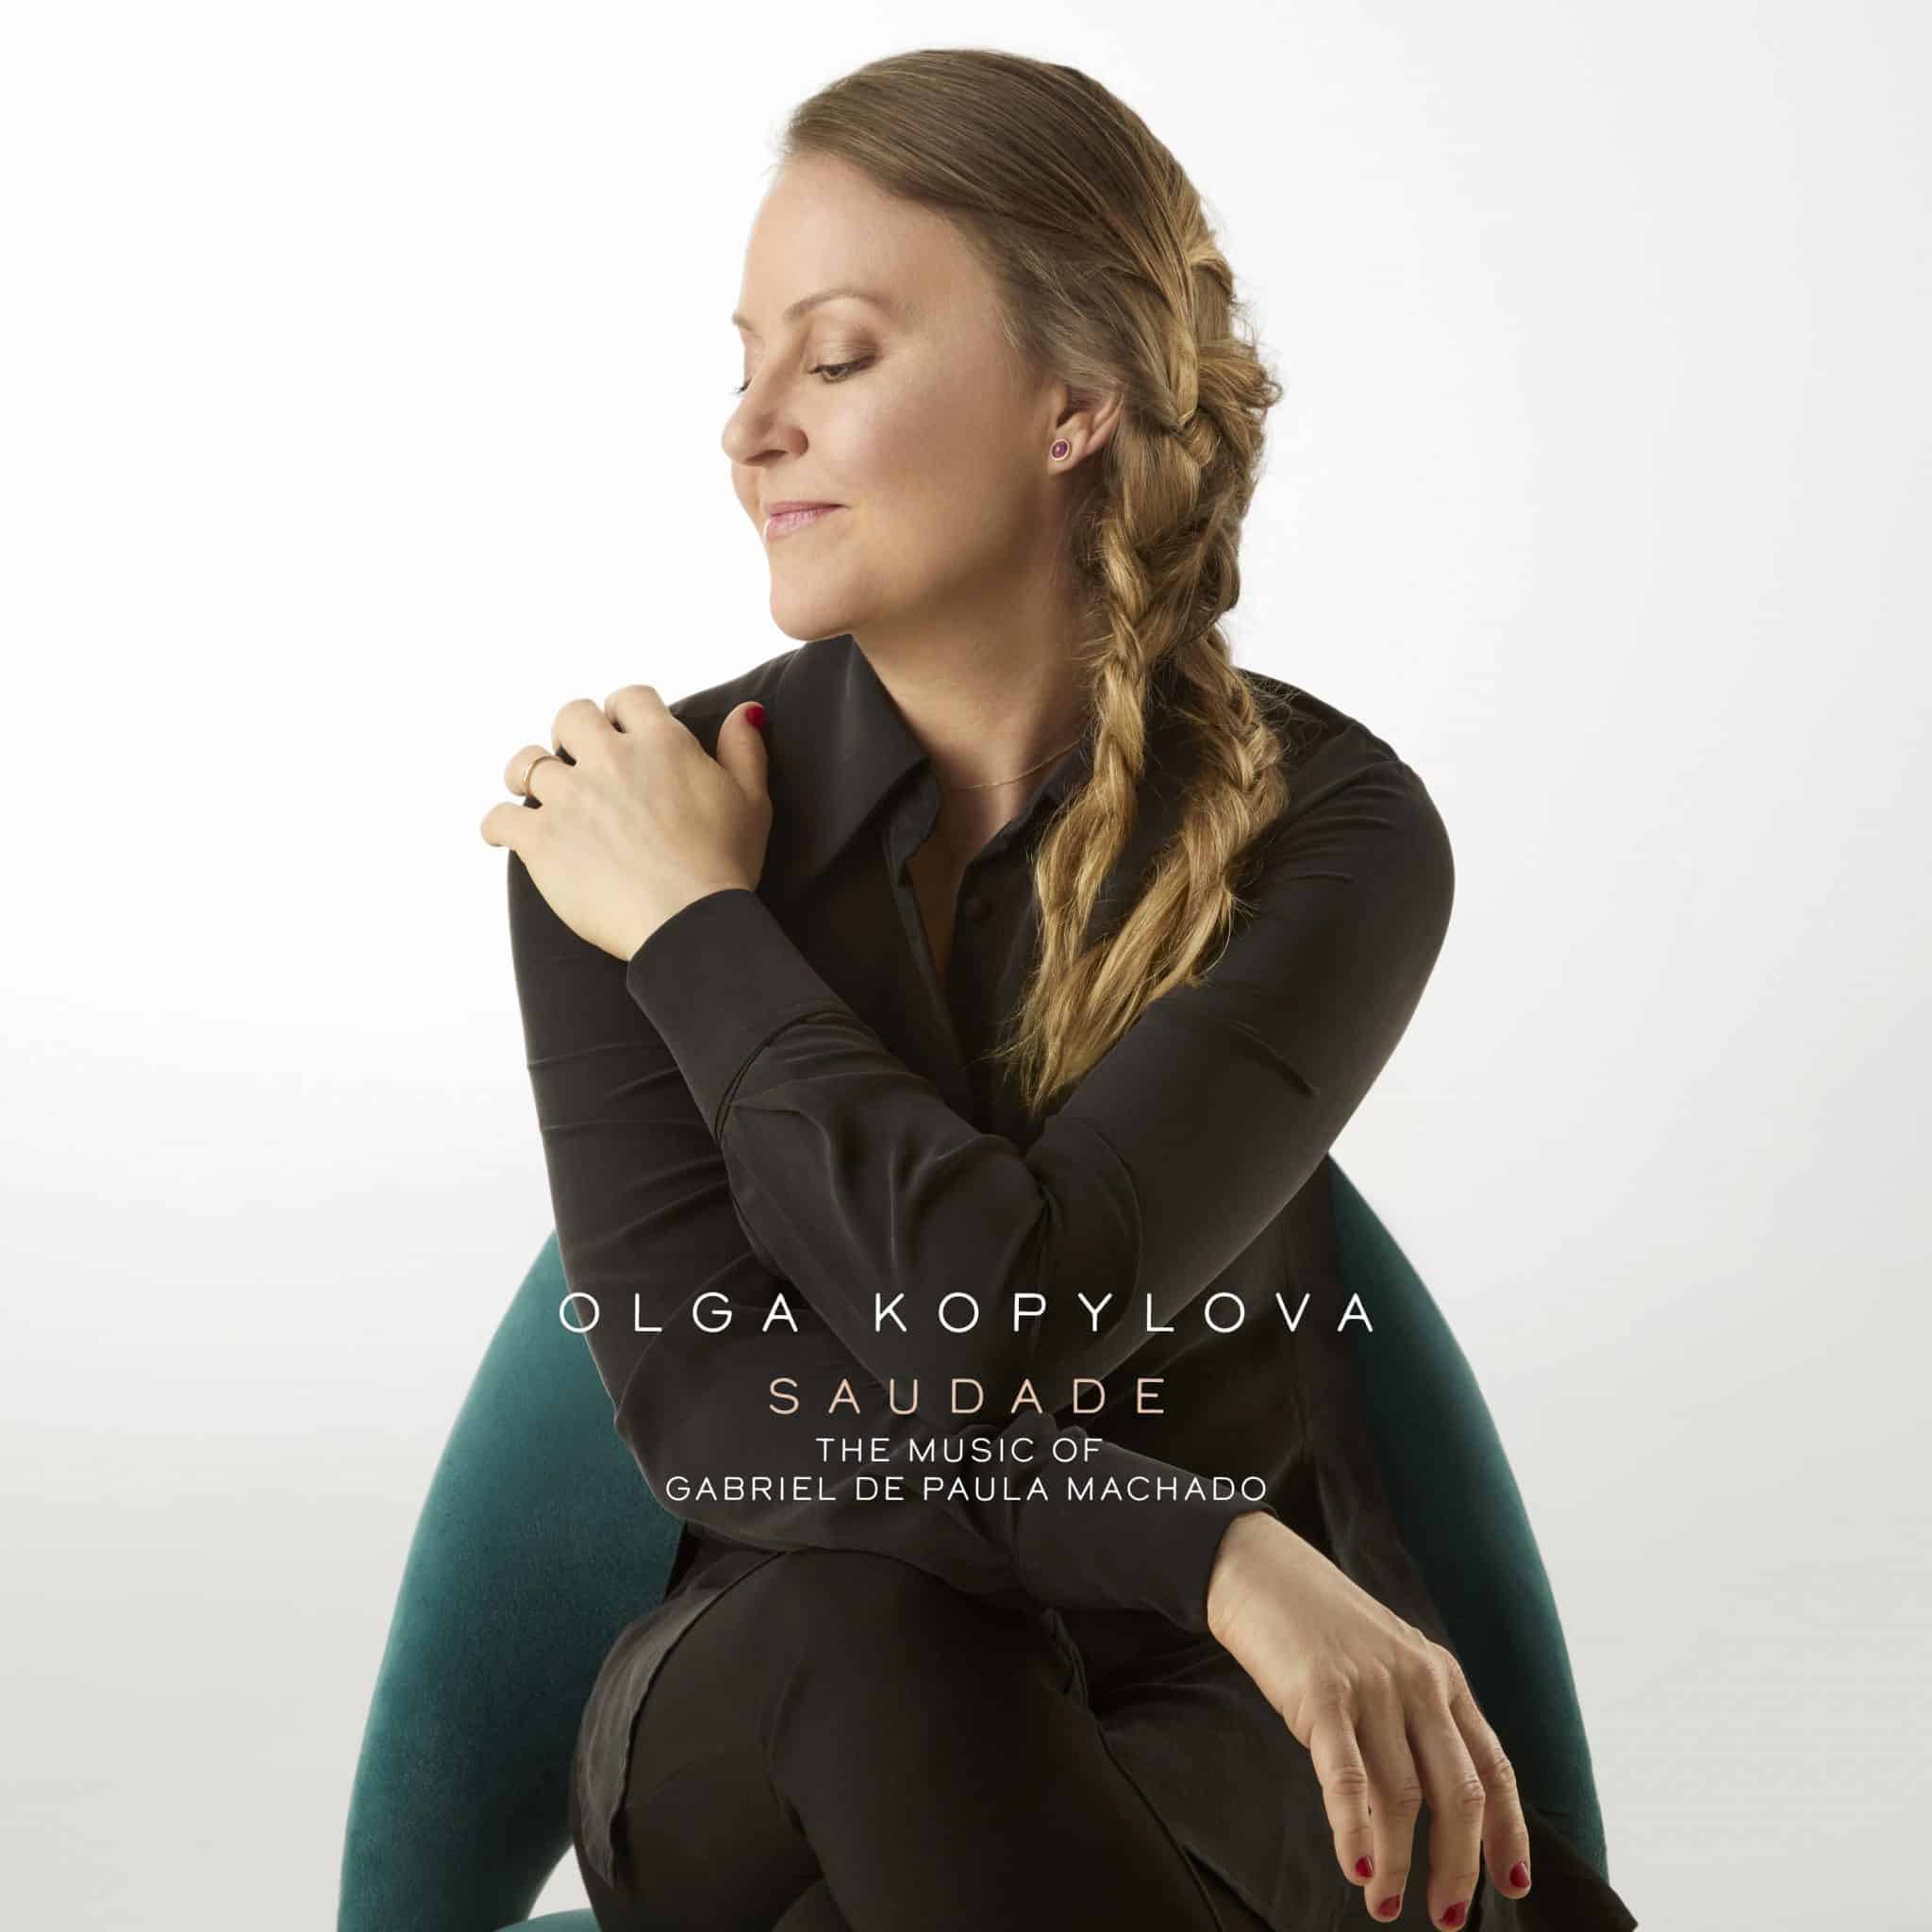 revistaprosaversoearte.com - Olga Kopylova lança álbum 'Saudade', celebrando o compositor Gabriel de Paula Machado